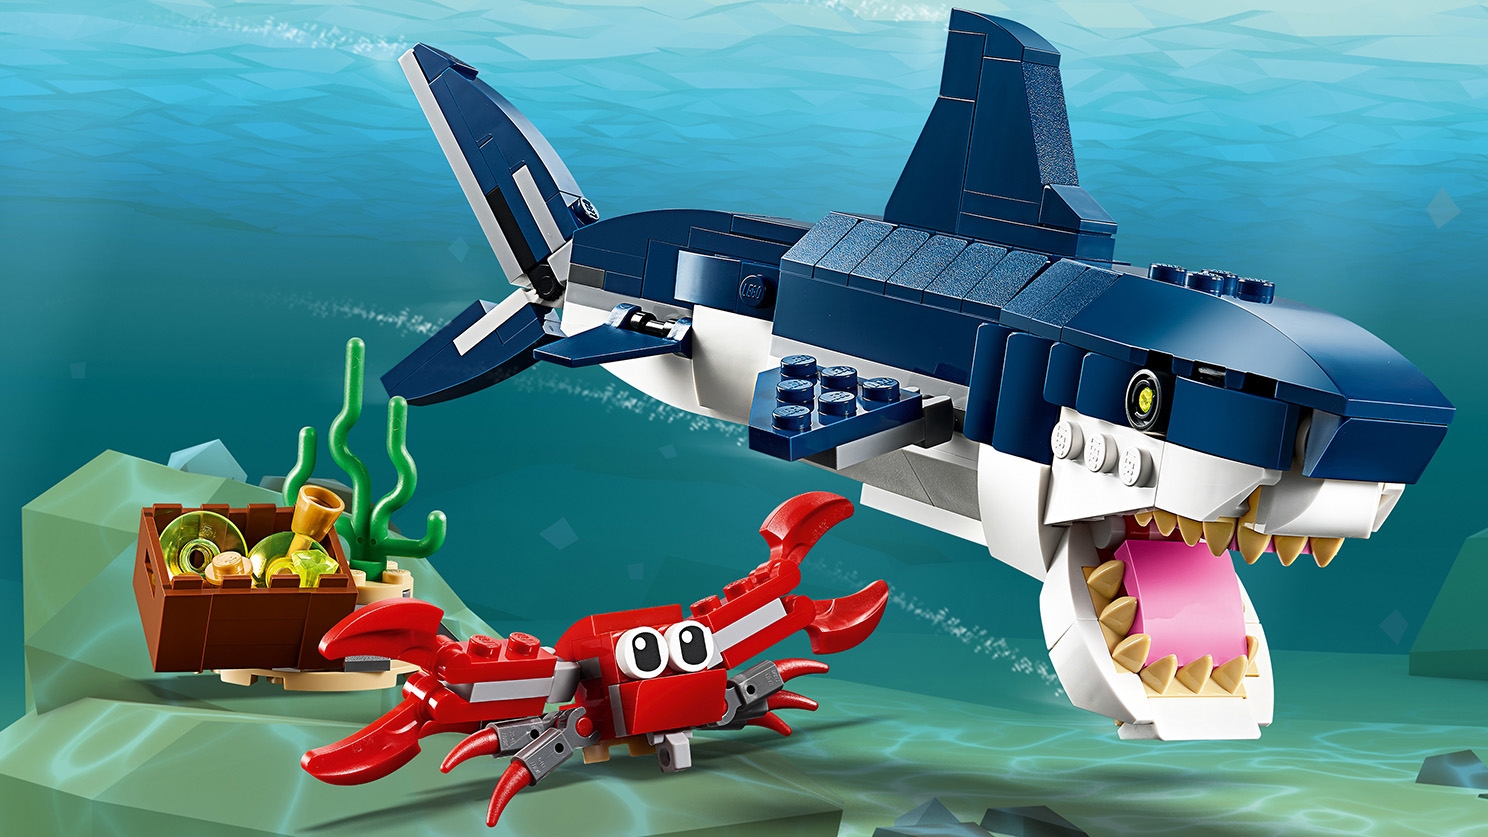 Deep Sea Creatures - Videos - LEGO.com for kids